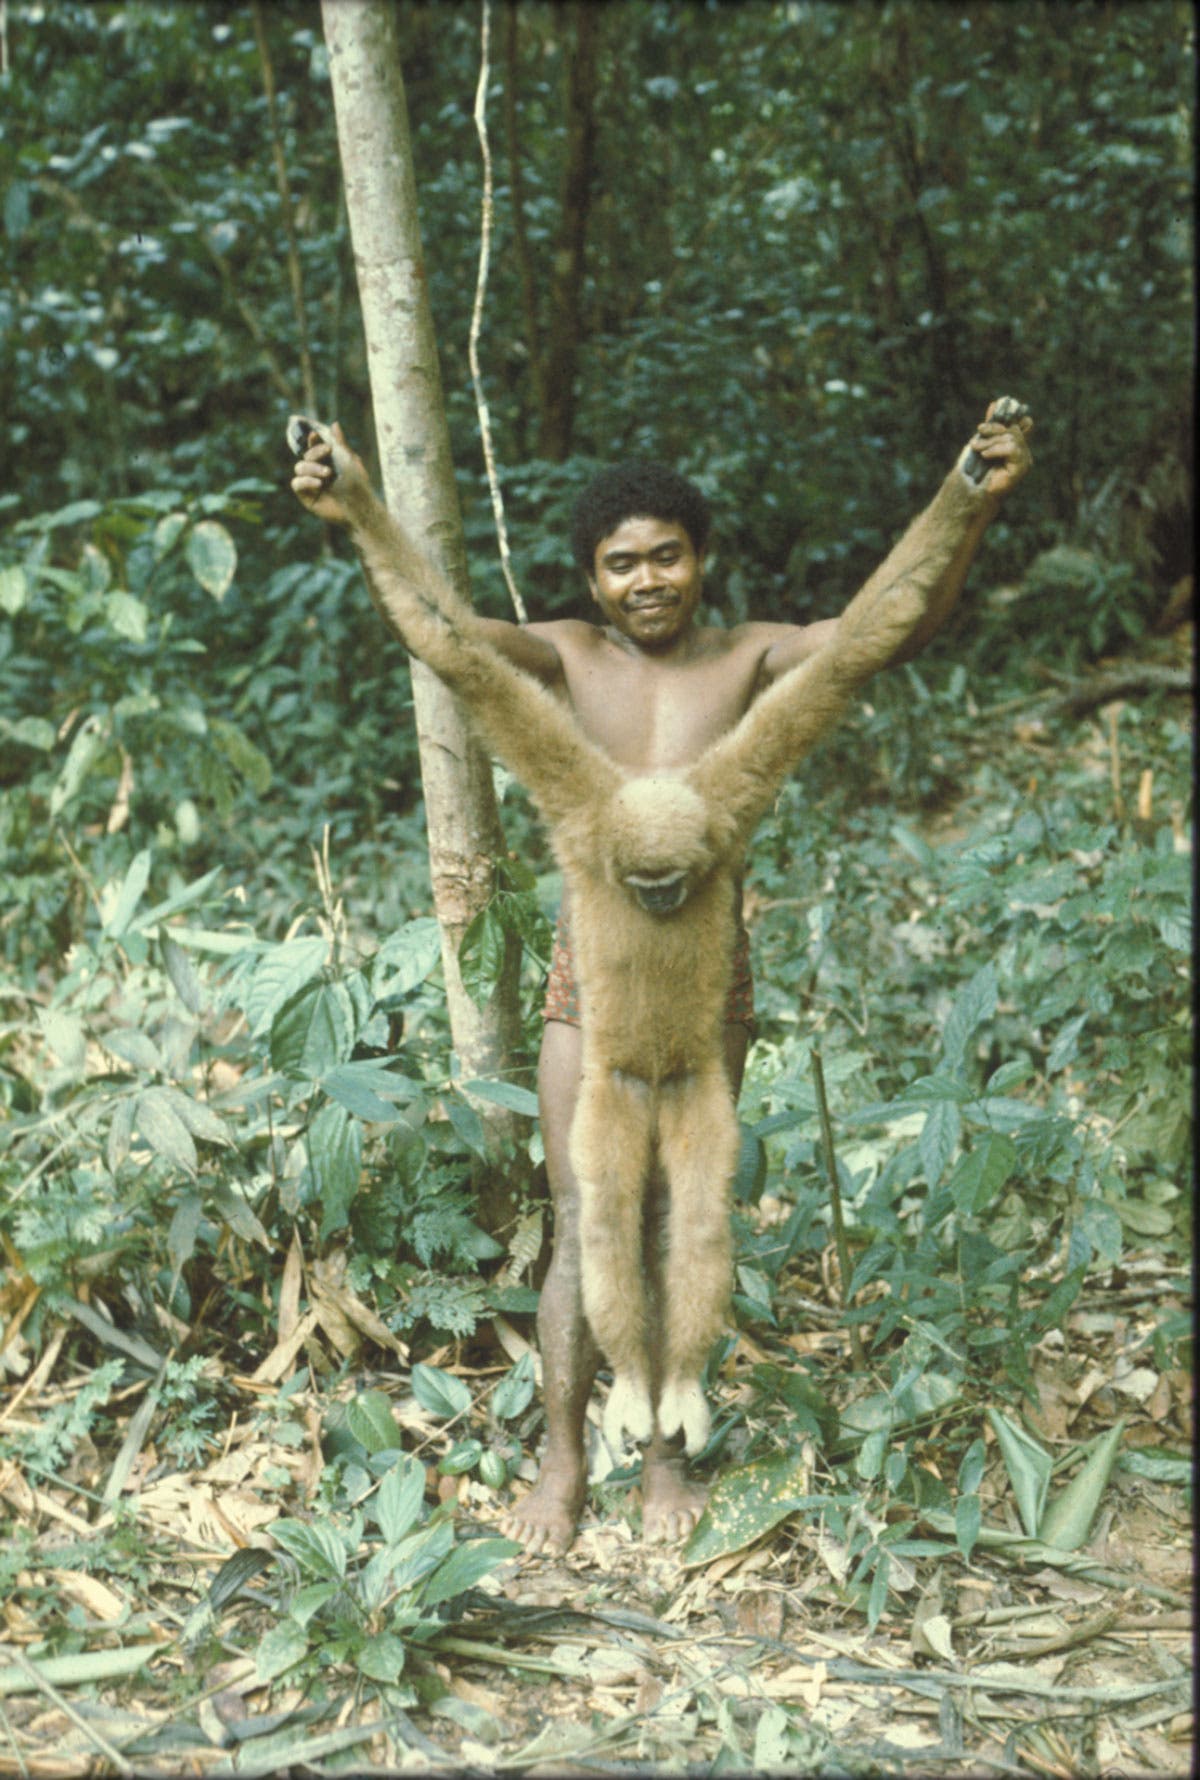 Ein indonesischer Jäger in Shorts steht zwischen Bäumen und hält einen toten, etwa kindgroßen Affen in Kreuzigungspose.